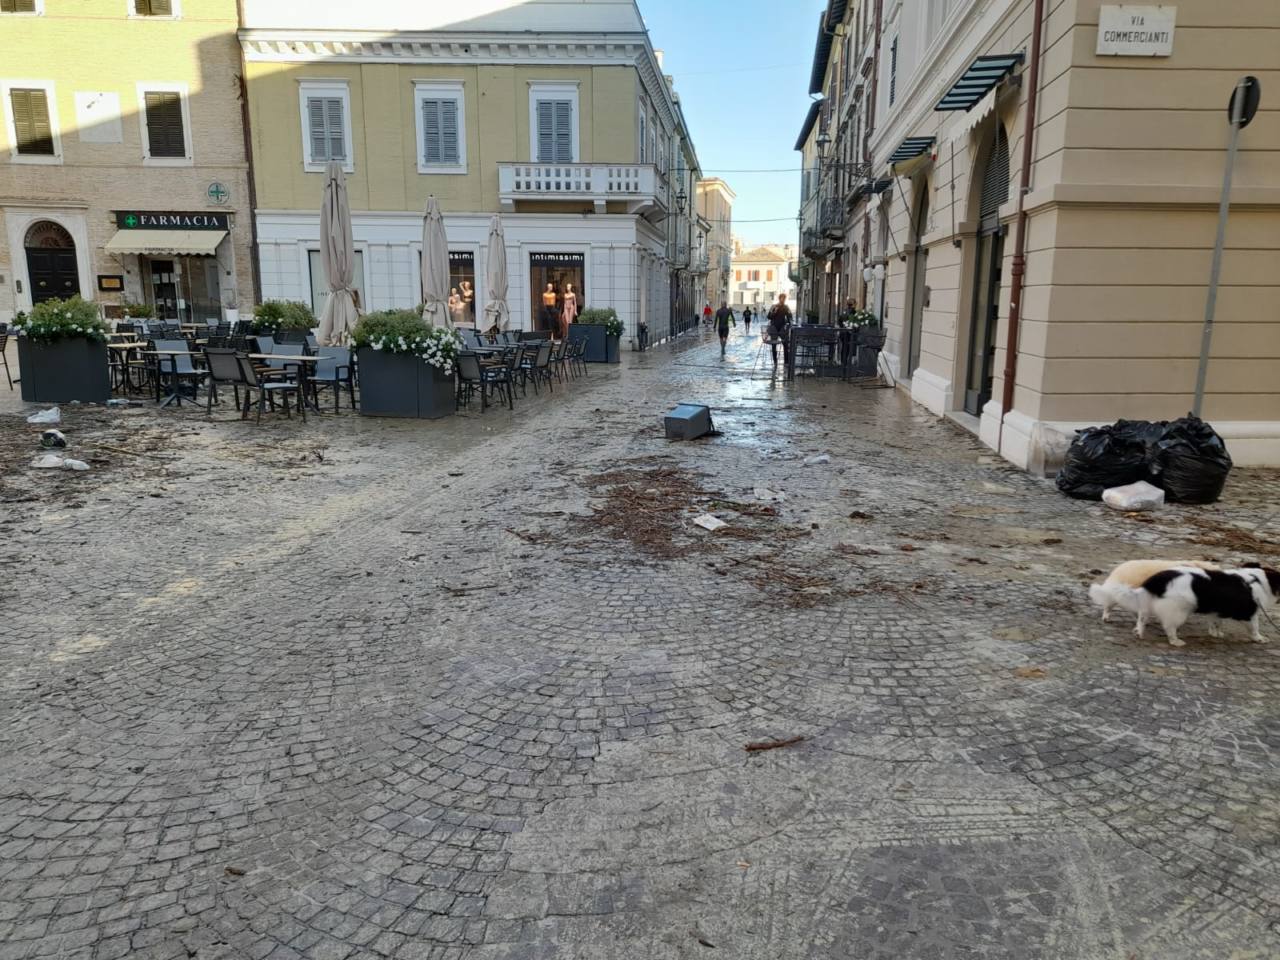 La situazione in centro storico a Senigallia dopo il passaggio della piena